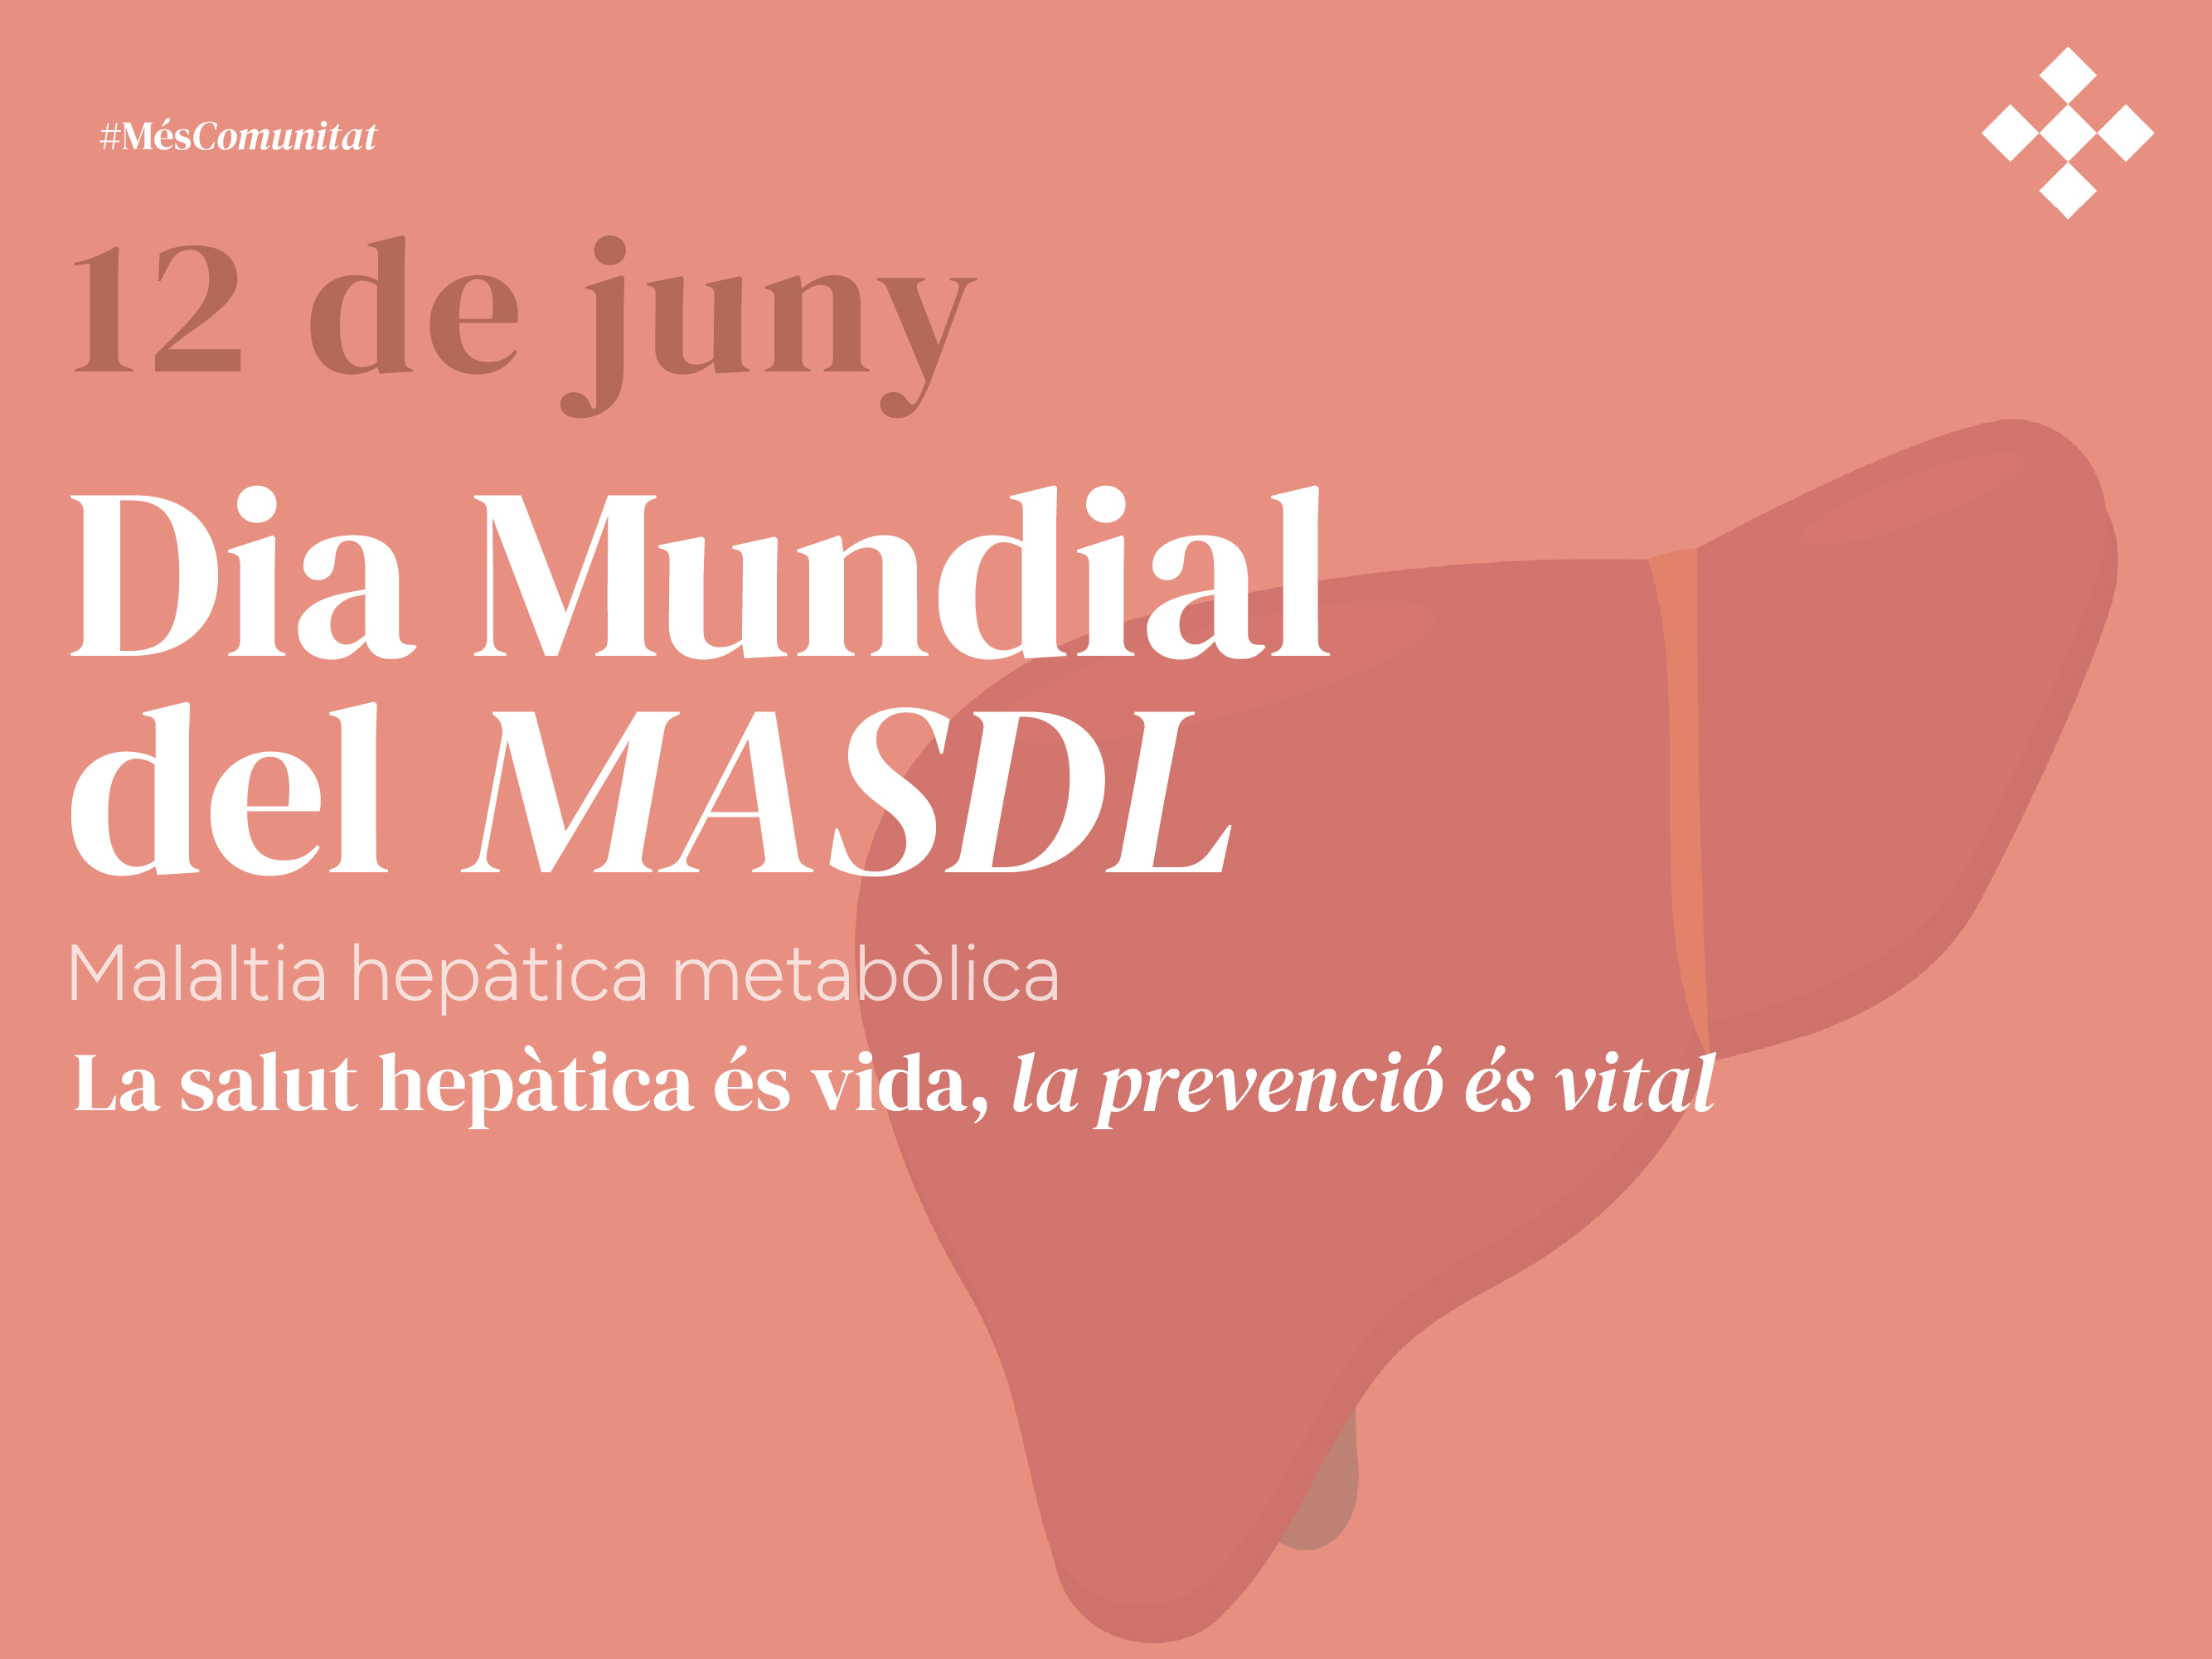 Dia Mundial del MASLD: La salut hepàtica és vida, la prevenció és vital